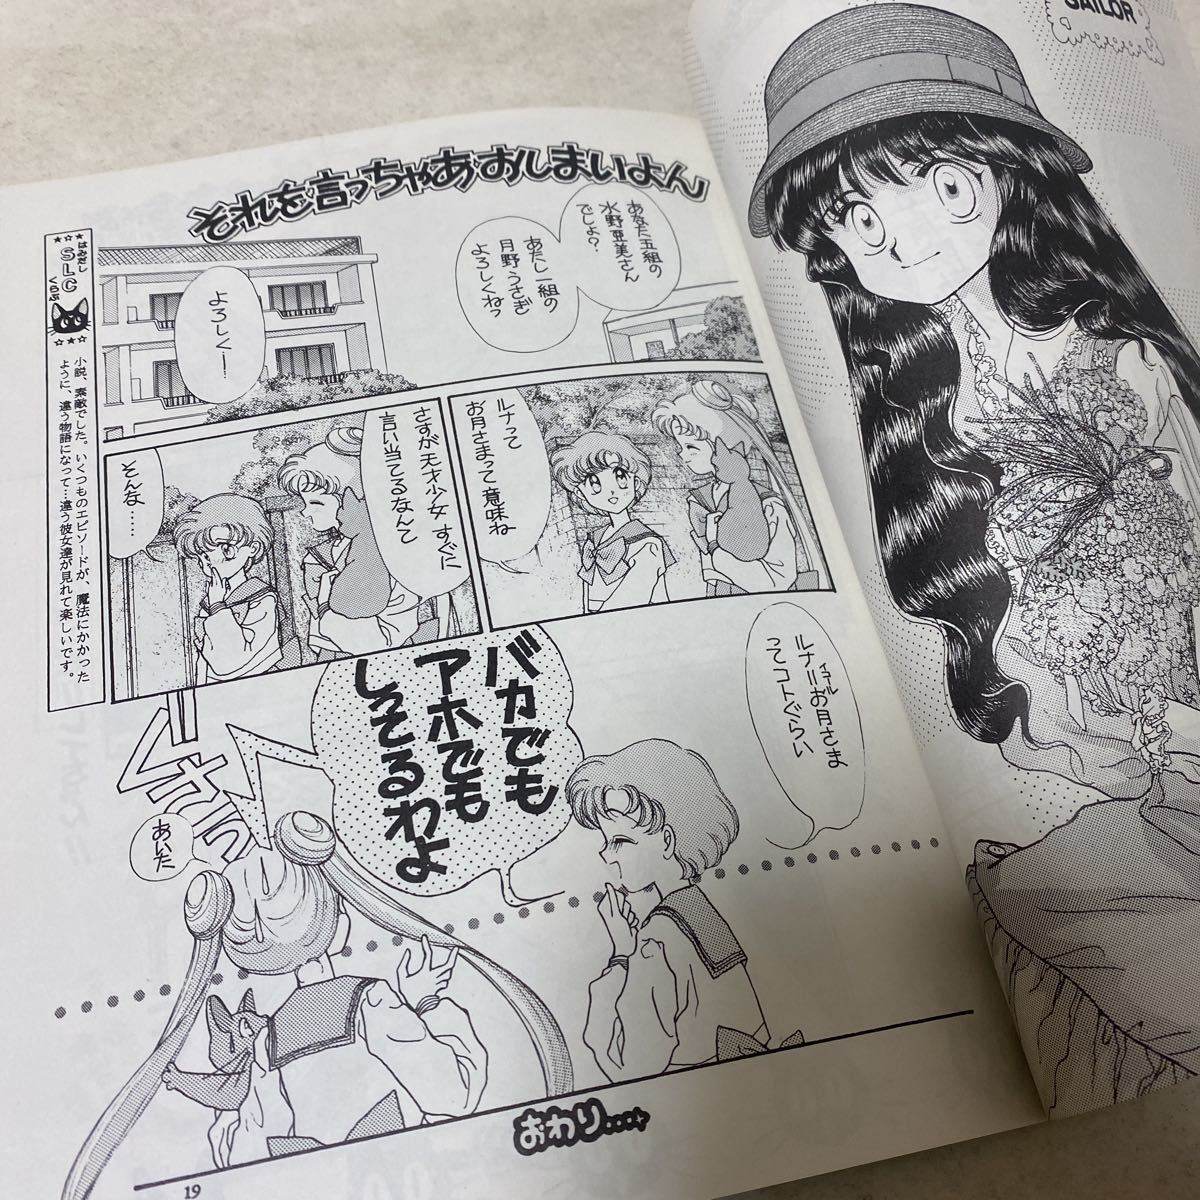 81-20 Sailor Moon журнал узкого круга литераторов SAILAR LADY COLLECTION1*2*3 1993 год выпуск вода ........... расческа ...... ....